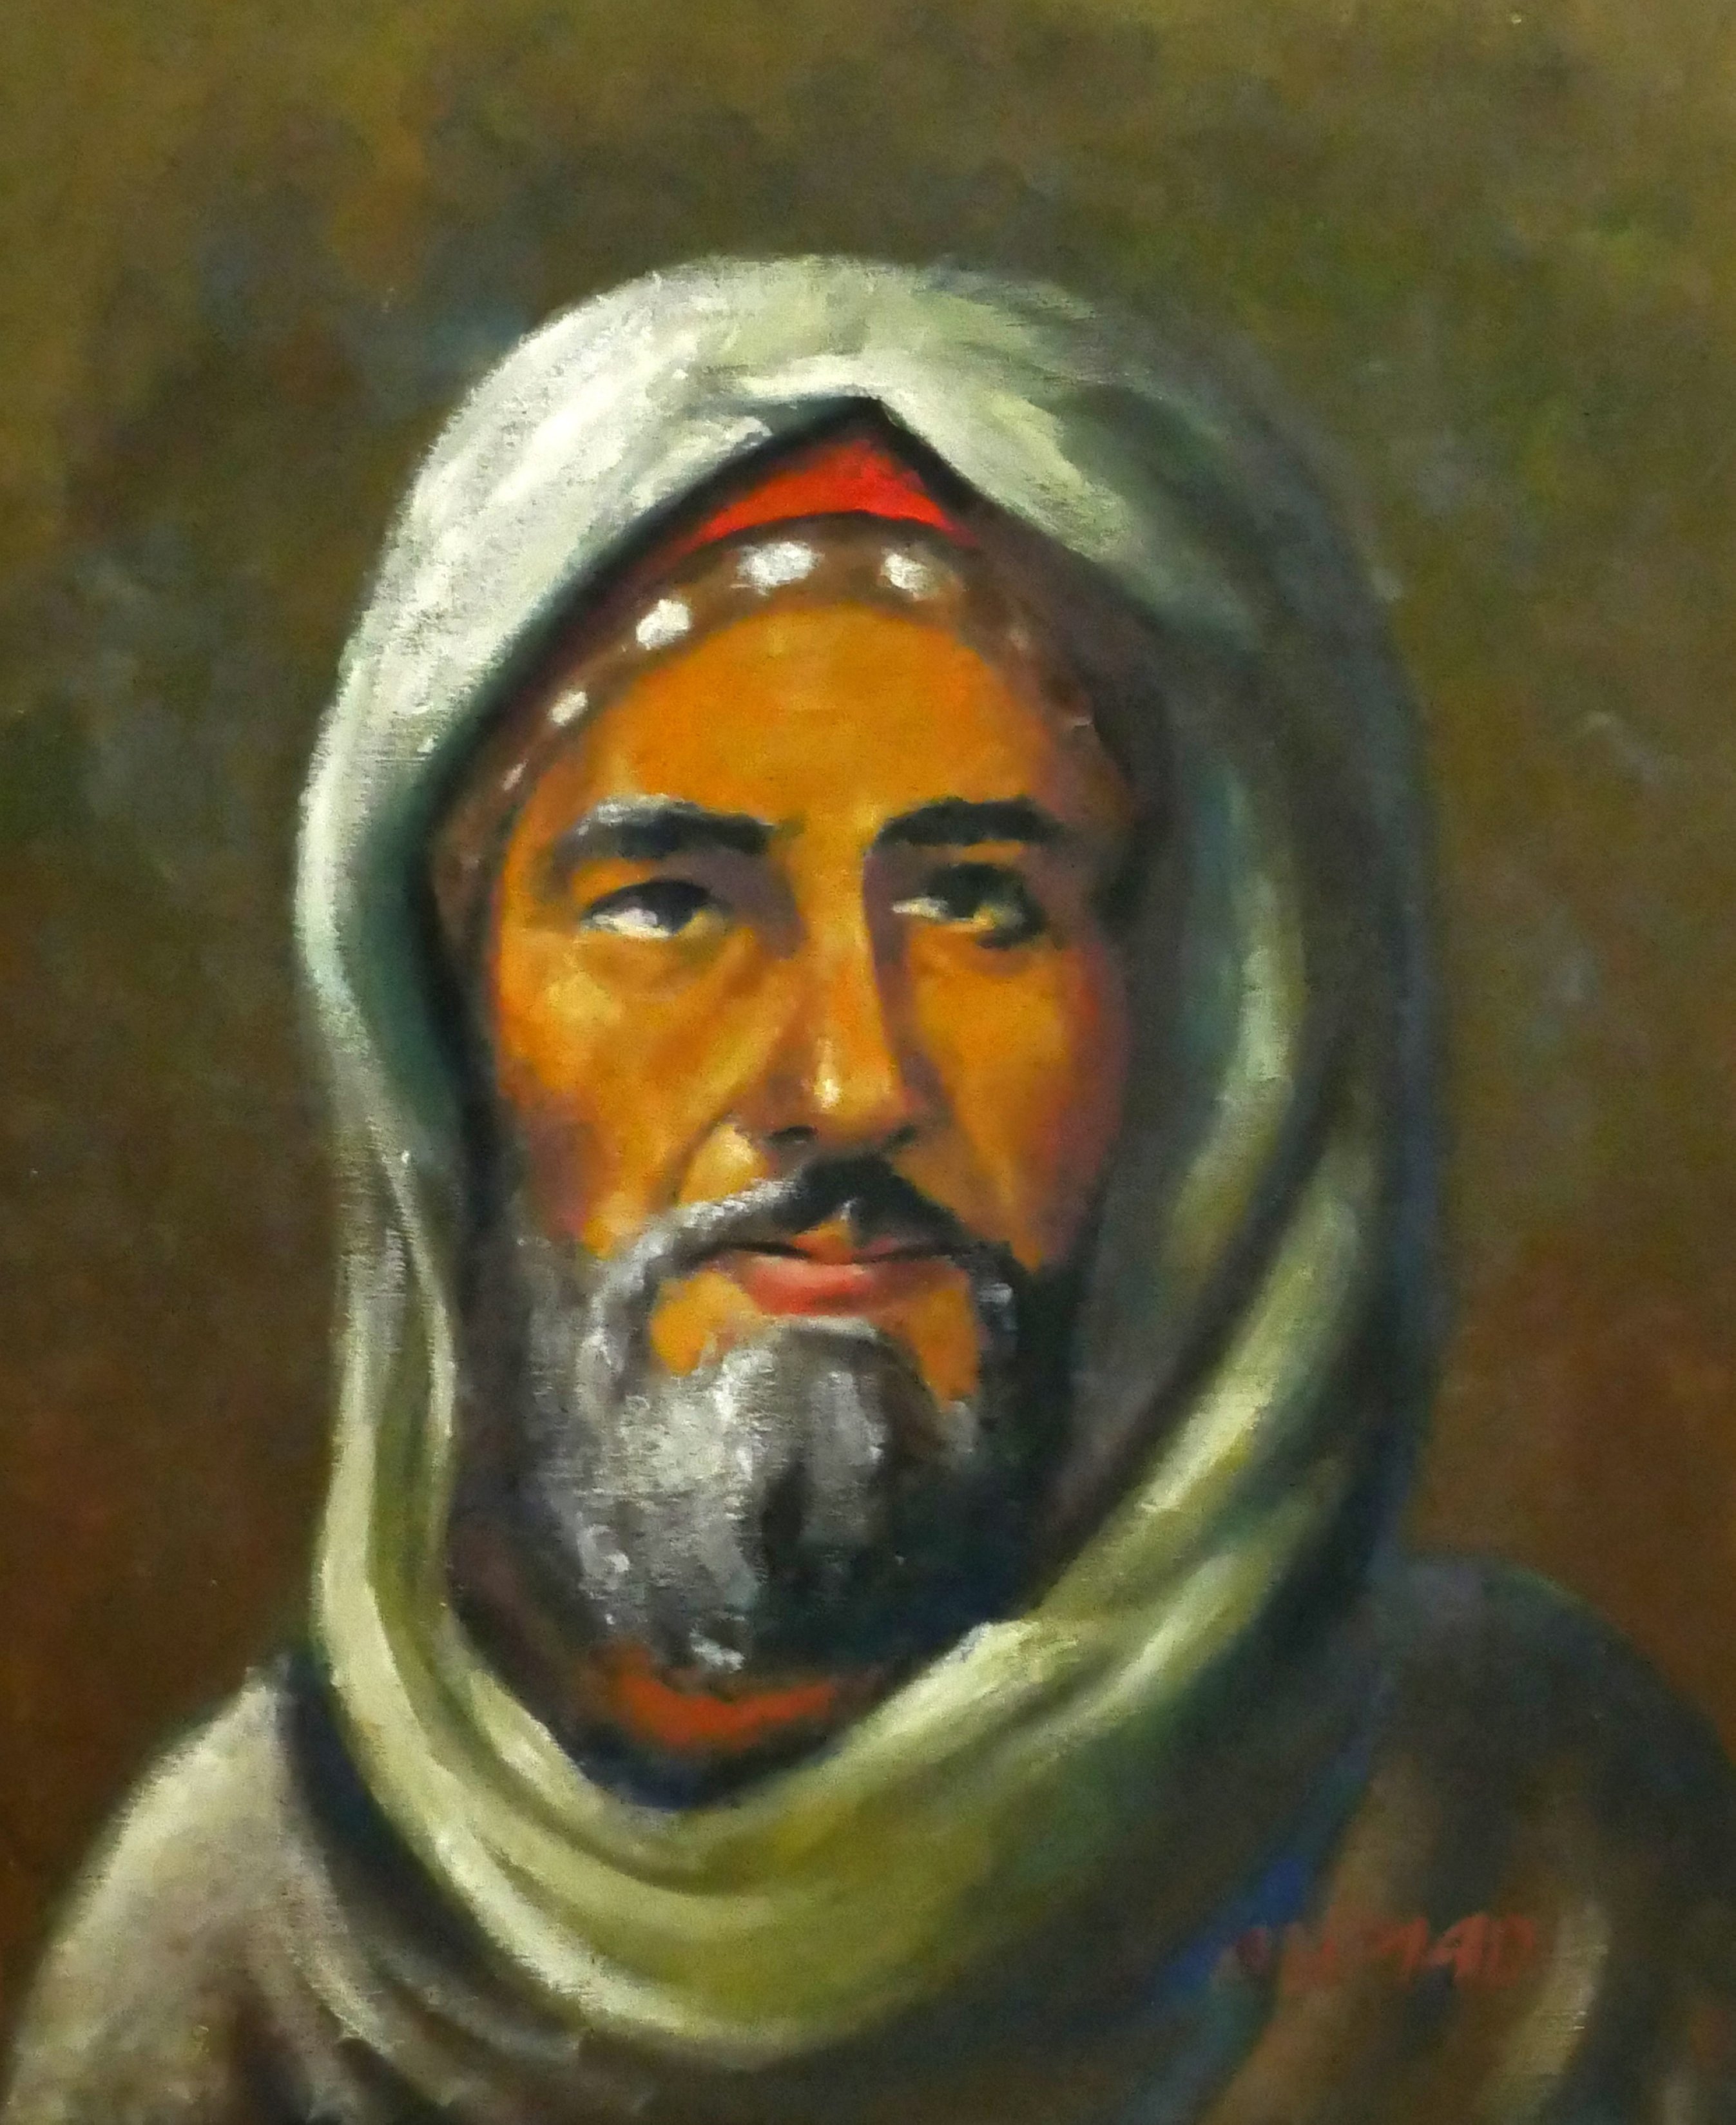 Potret Ibnu Battuta, seorang cendekiawan dan penjelajah Muslim yang banyak menjelajah dunia abad pertengahan.  (Foto Getty Images)